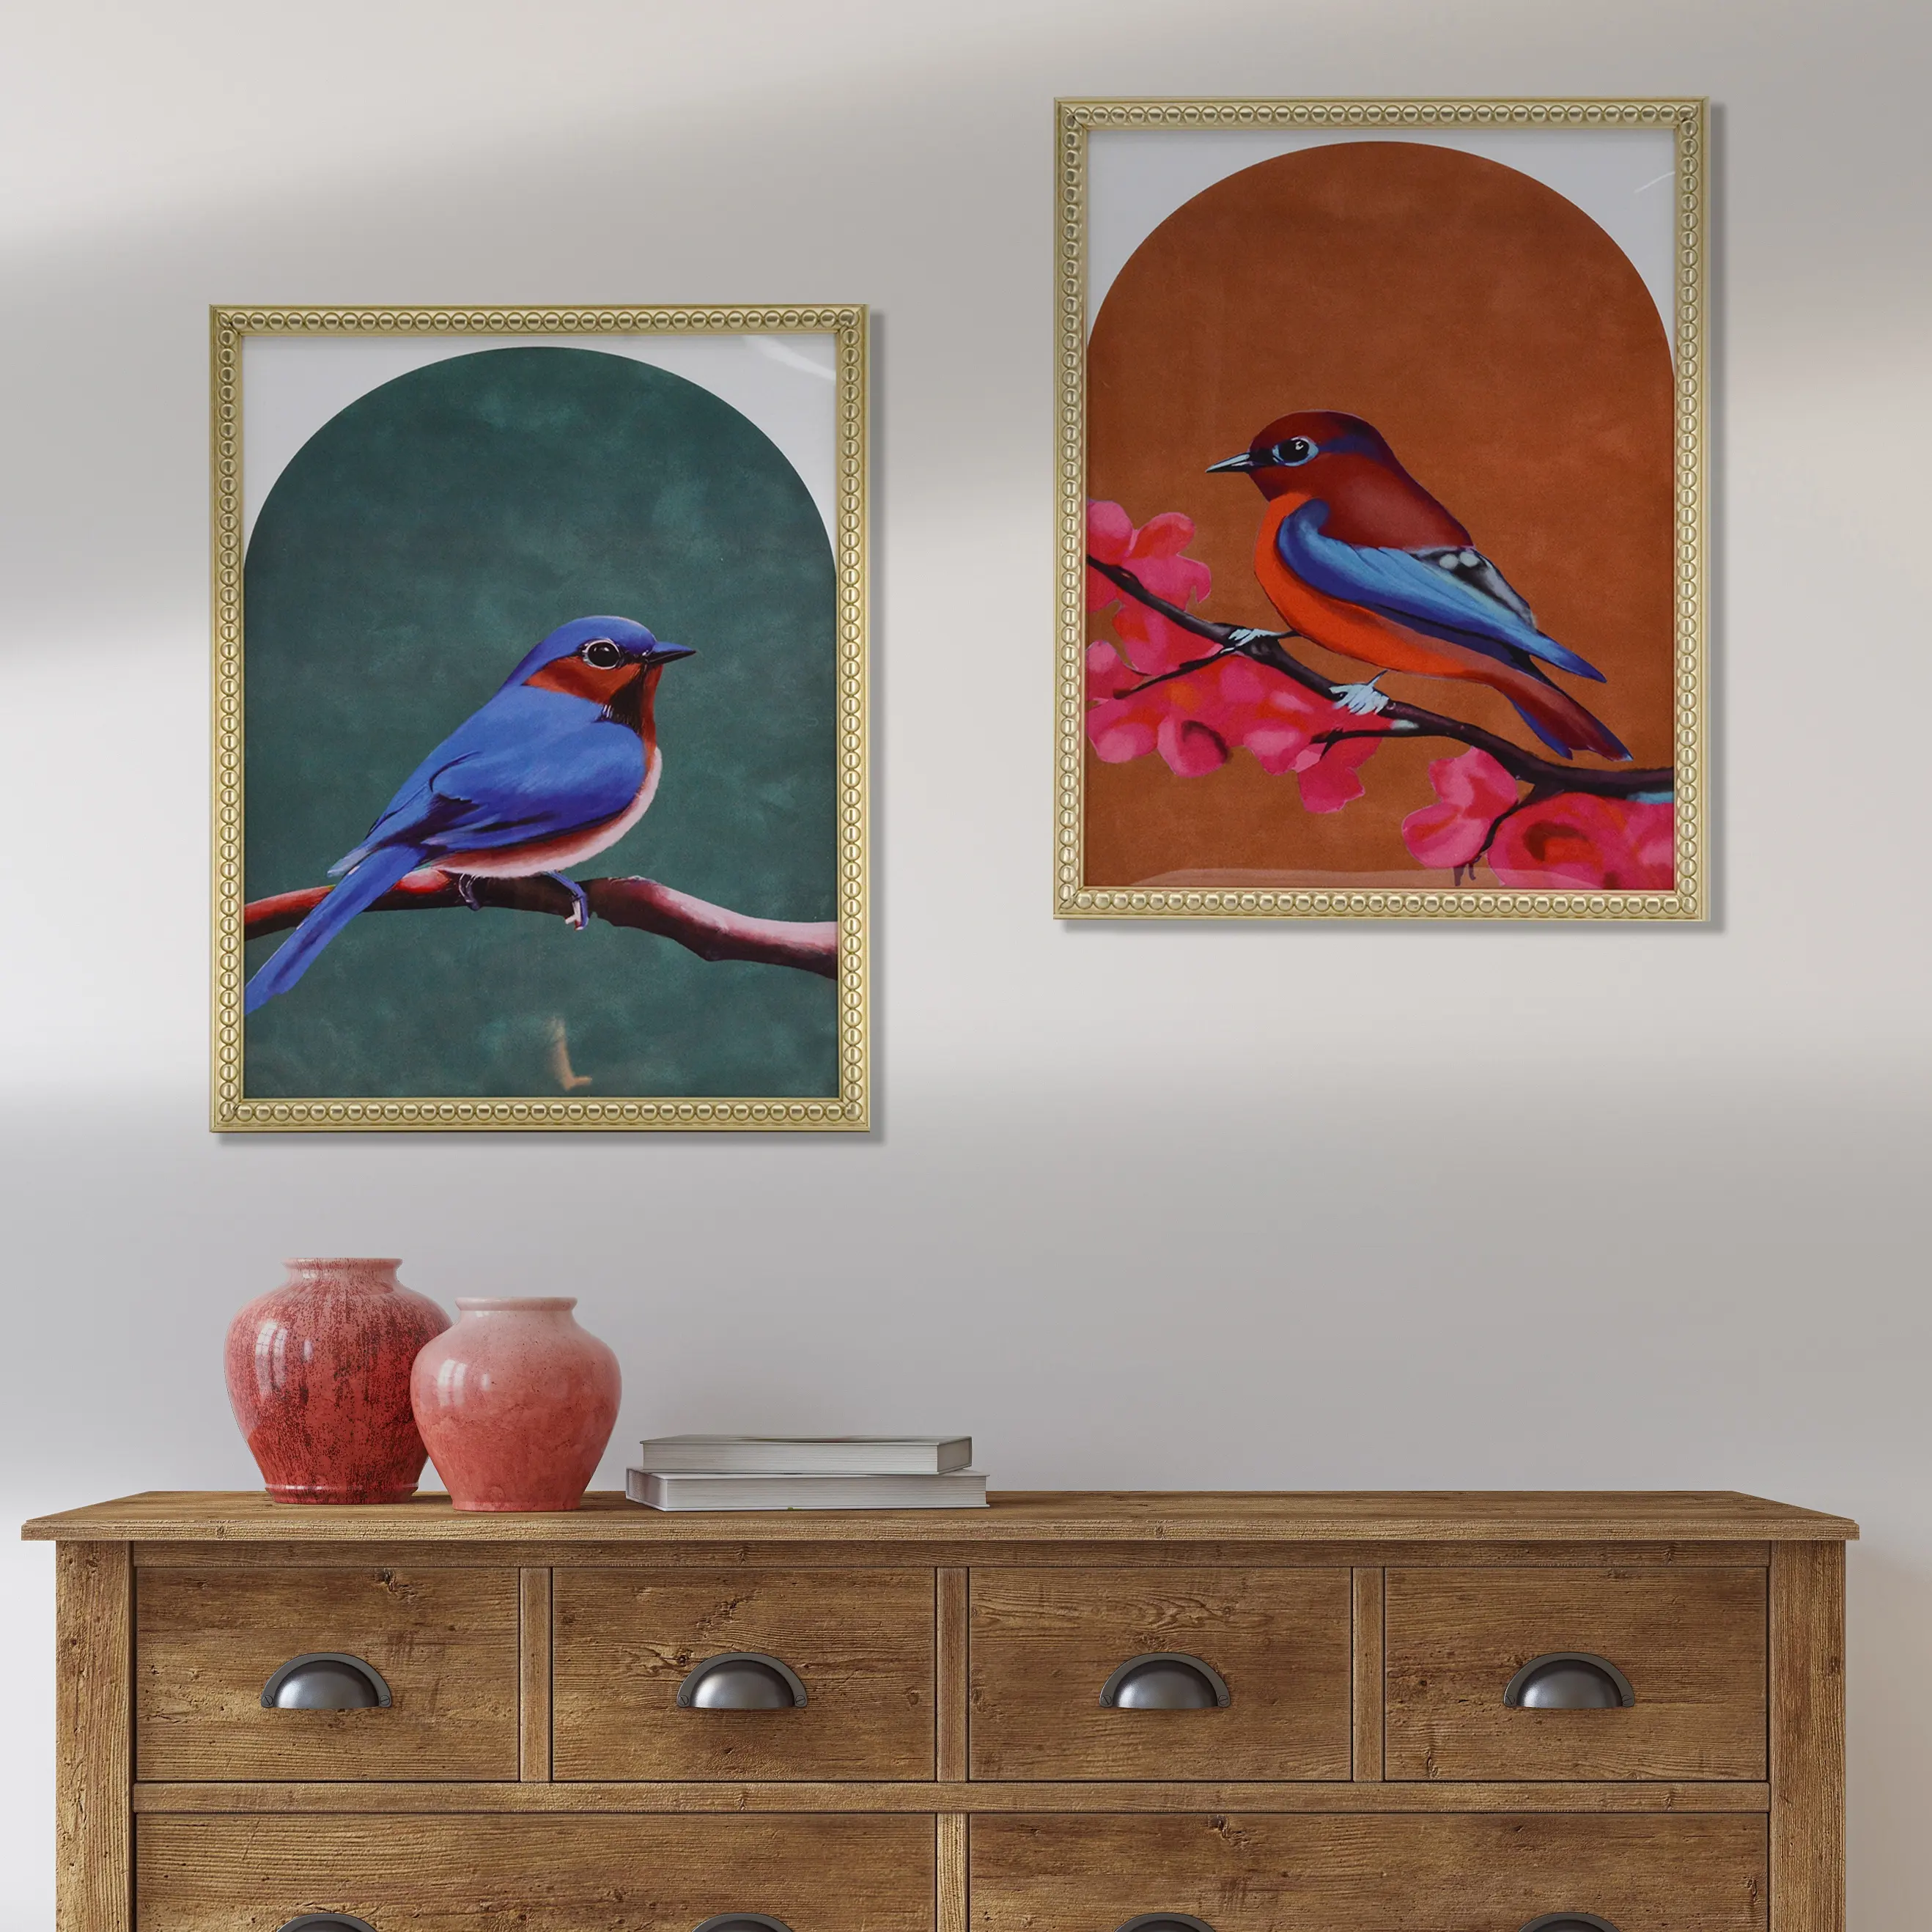 Serie de pájaros de color rojo y verde personalizada de fábrica, juego de Arte de pared de impresión de papel de diseño de 2 piezas con marco dorado